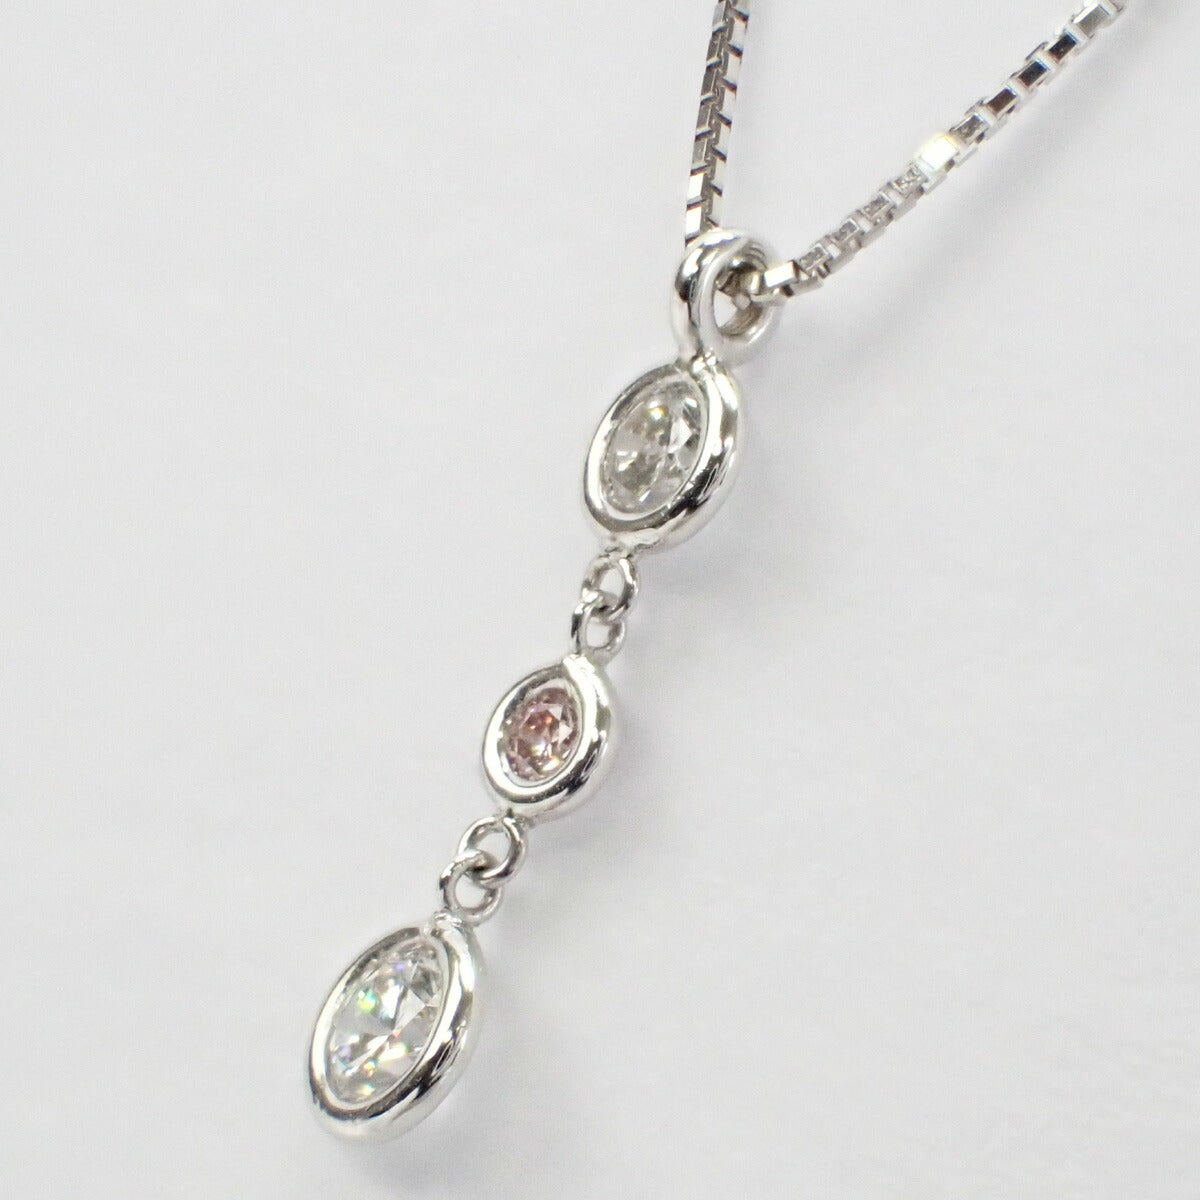 K18WG Diamond Necklace, 3P Diamond, Silver Finish, Ladies (Pre-owned)